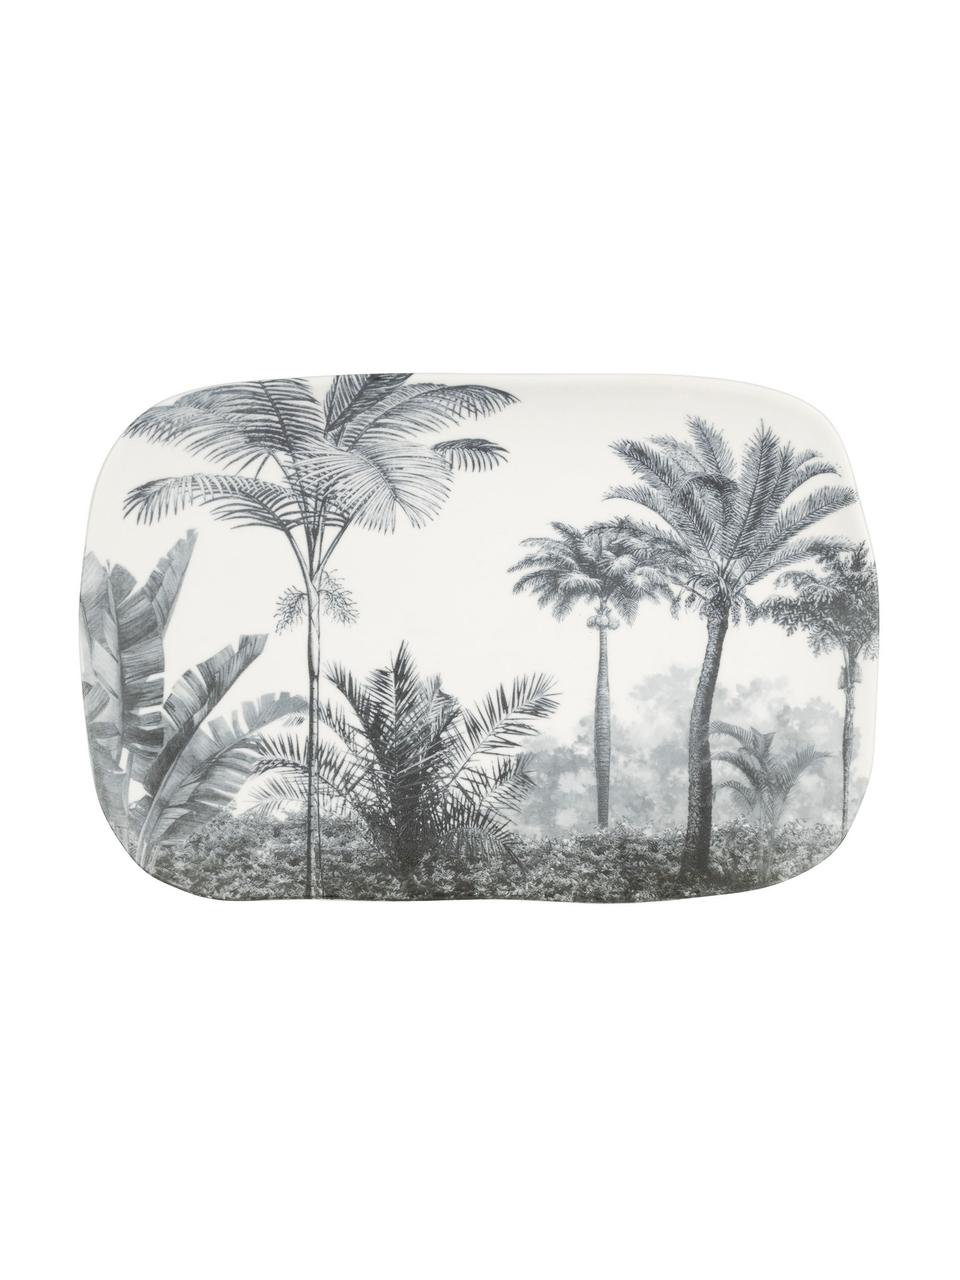 Servírovací tanier s palmovým motívom Papaye, D 28 x Š 18 cm, Biela, čierna